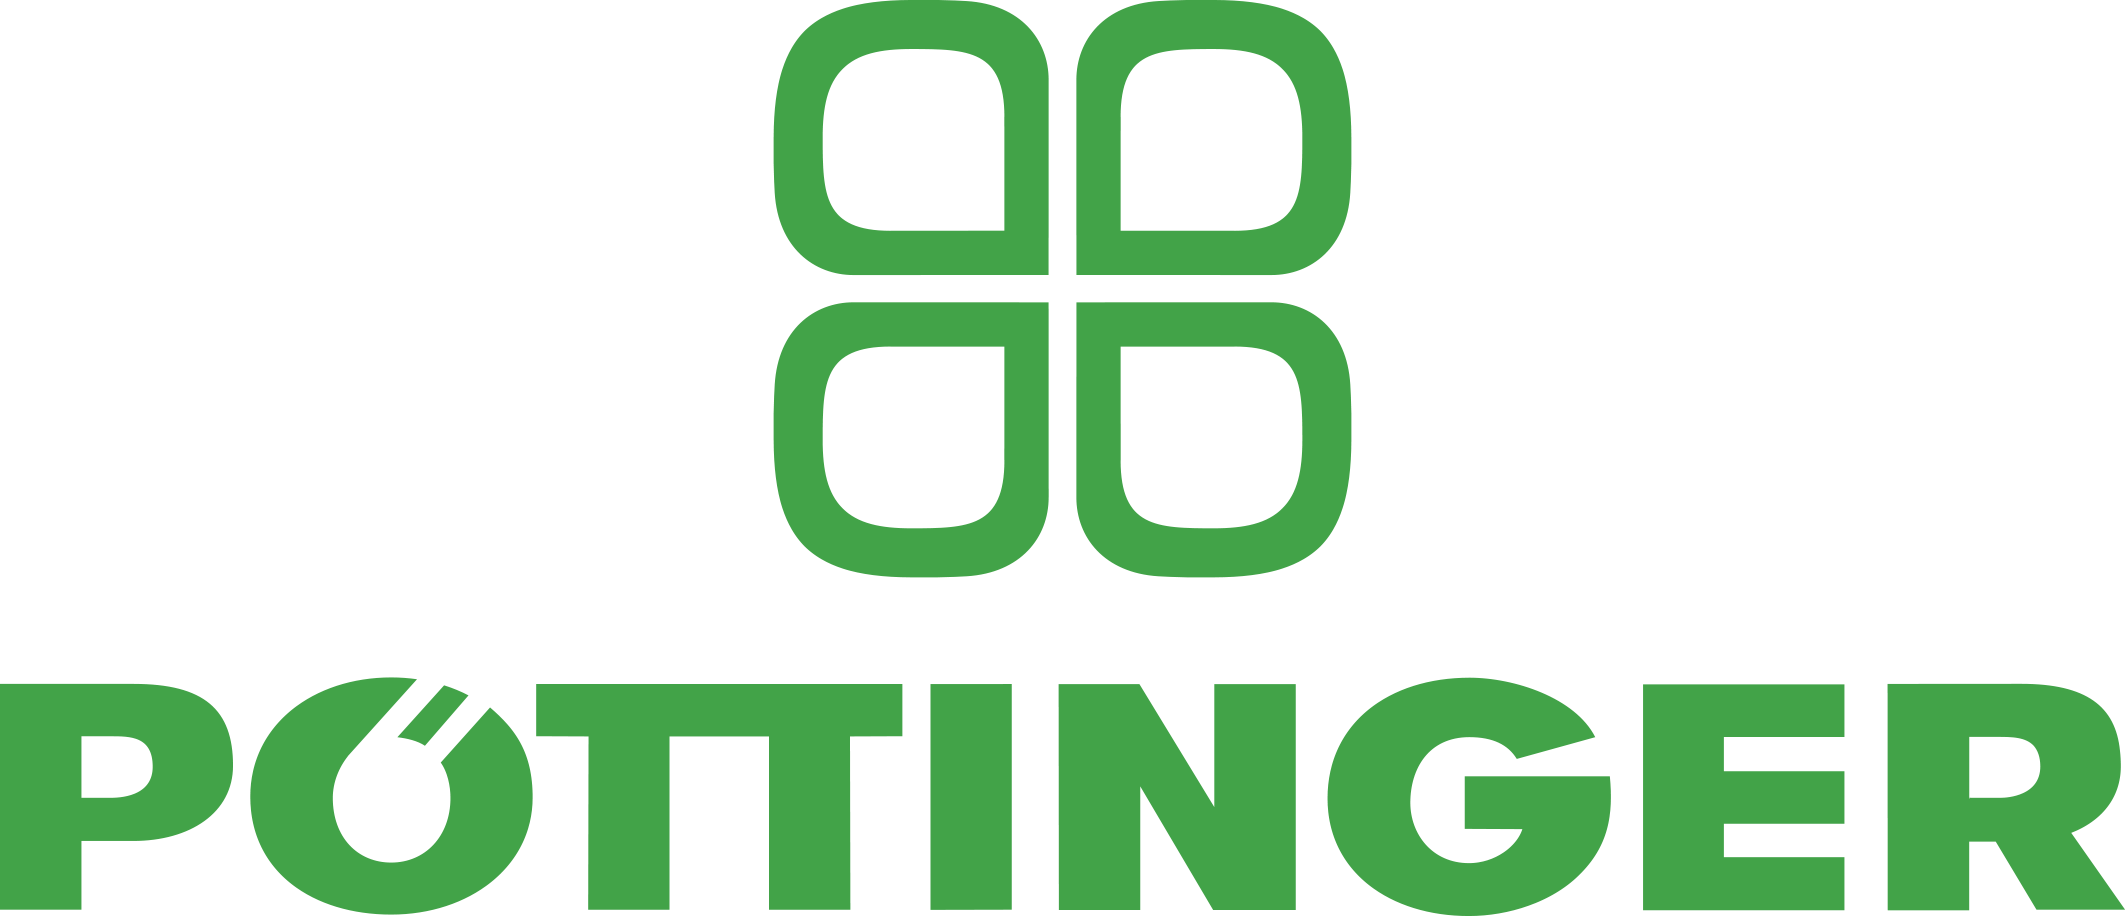 Pottinger Logo 2 Zeilig Png Press Image High Res Pottinger United States